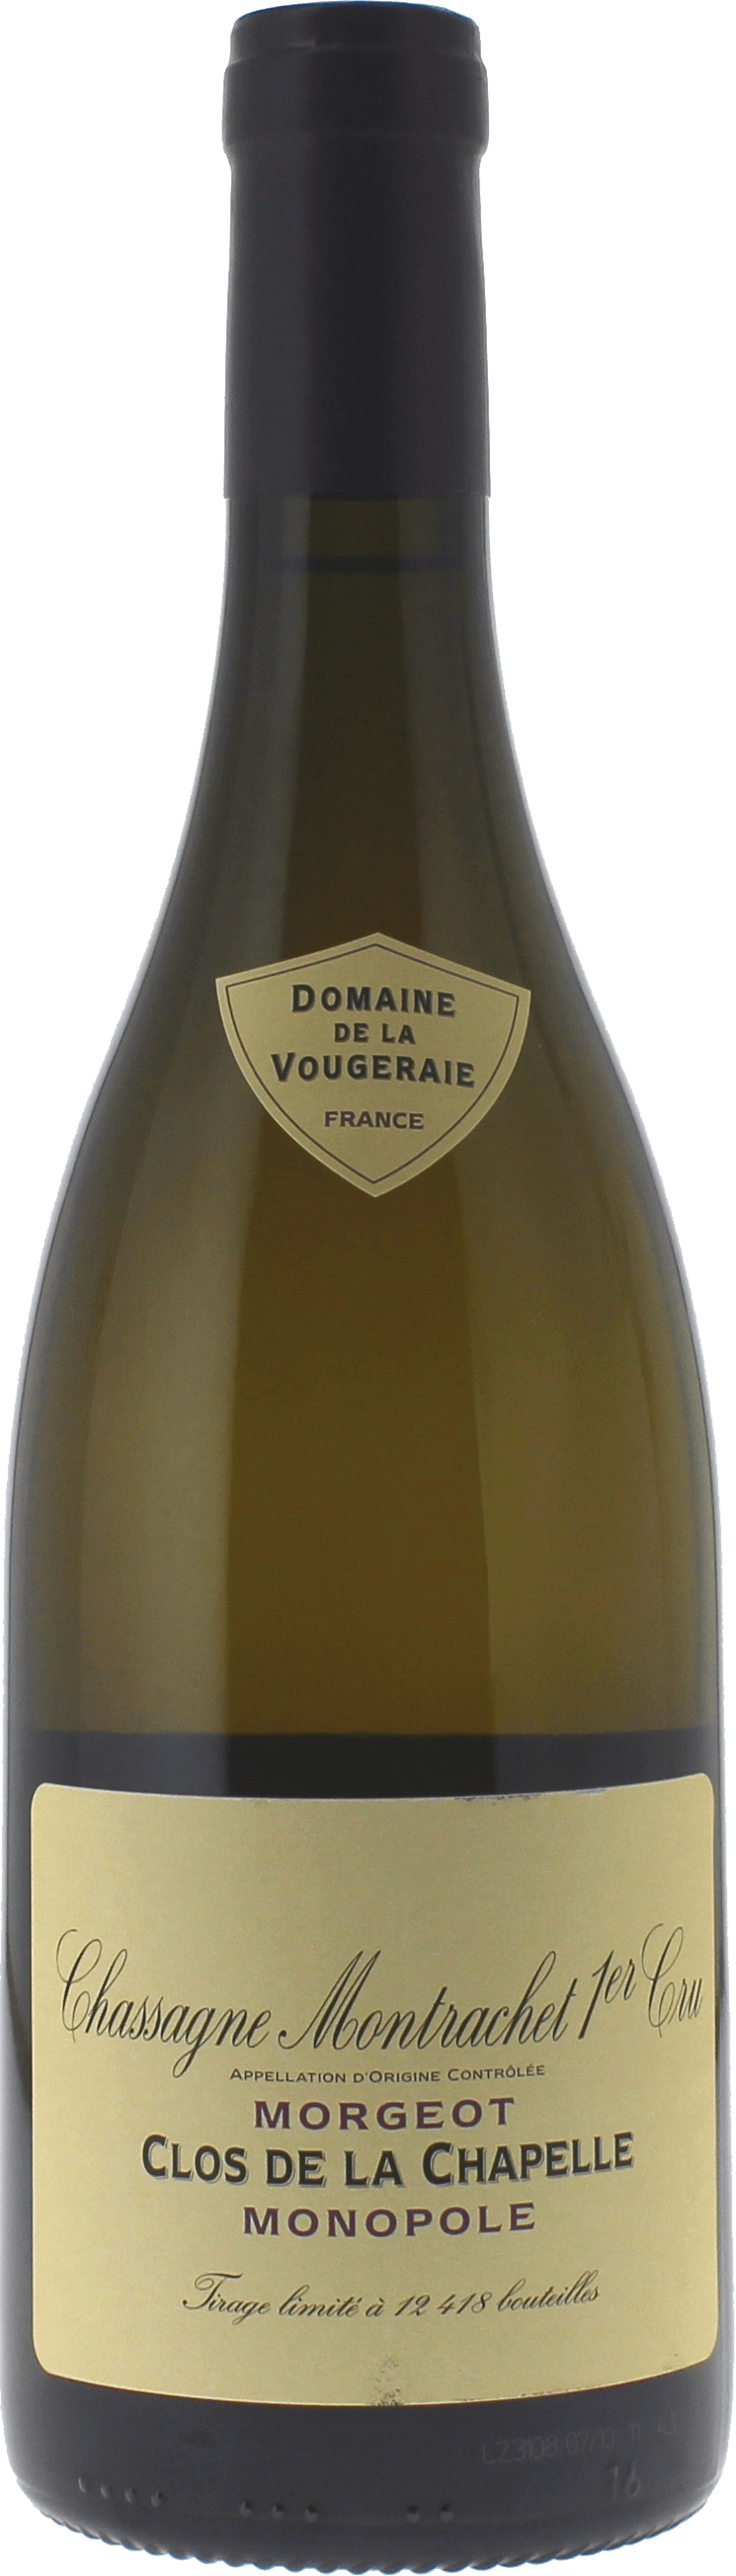 Chassagne montrachet 1er cru  morgeot 2021 Domaine VOUGERAIE, Bourgogne blanc